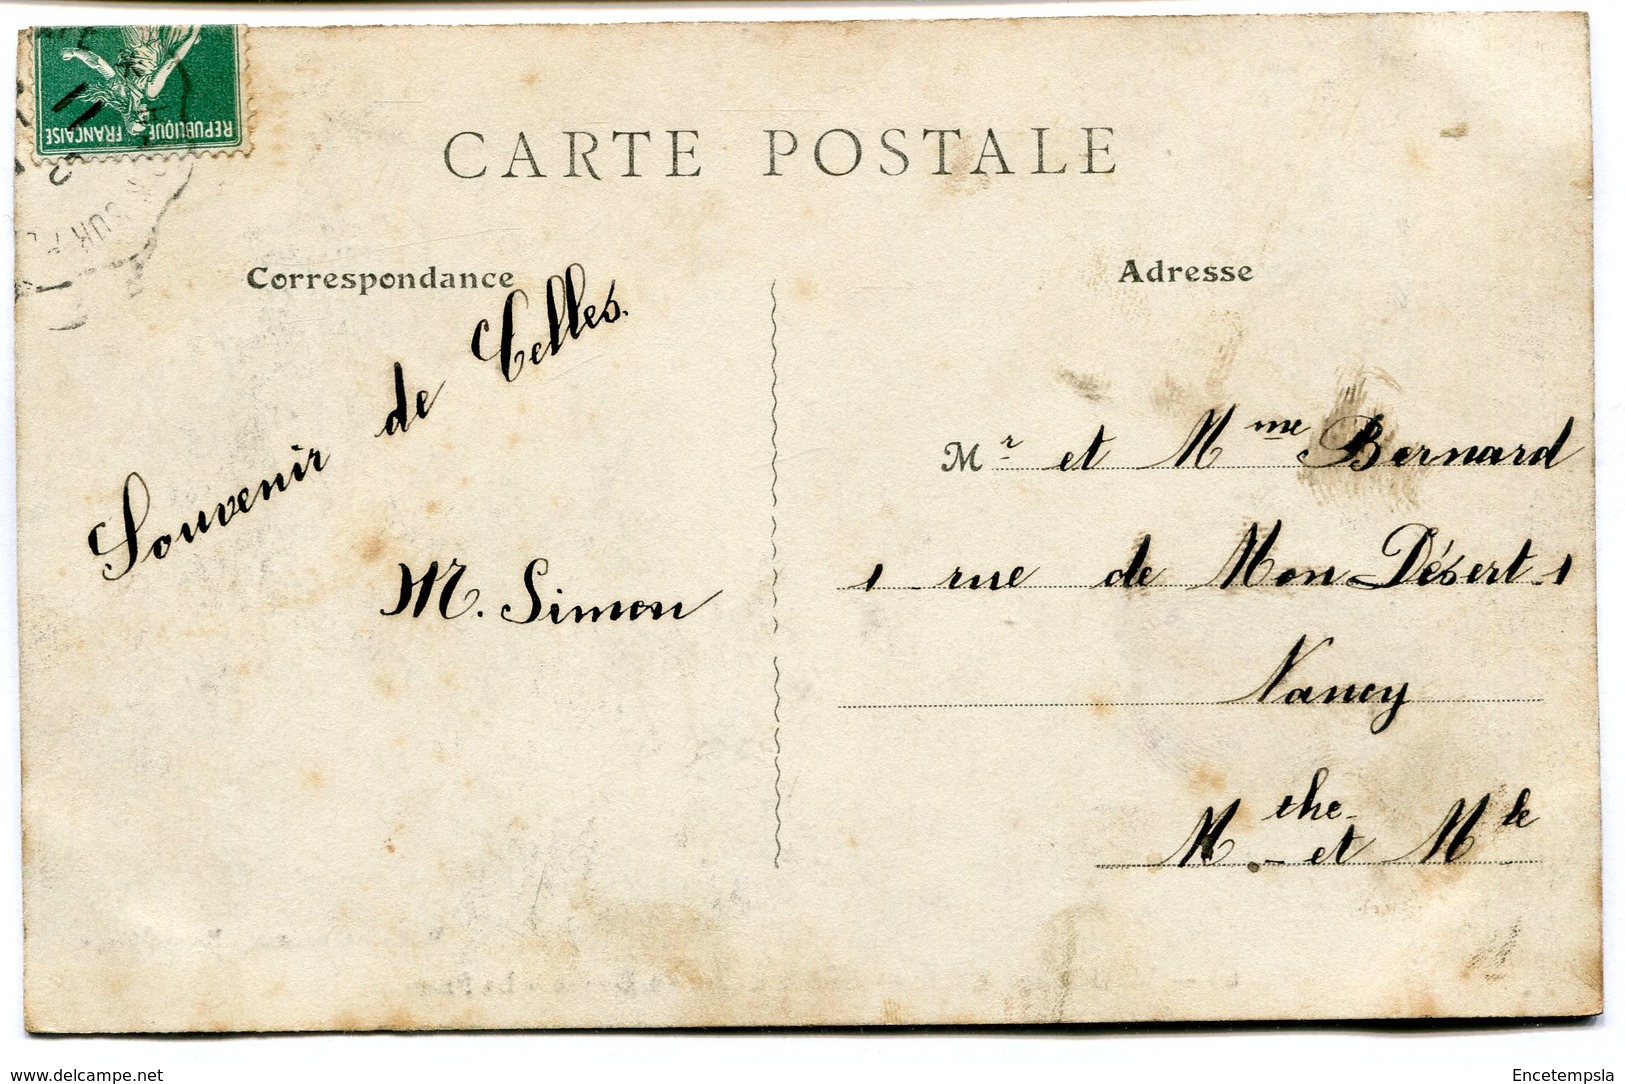 CPA - Carte Postale - France - Vallée De Celles - Sur La Route Du Donon - La Frontière - 1911 (I9706) - Autres & Non Classés